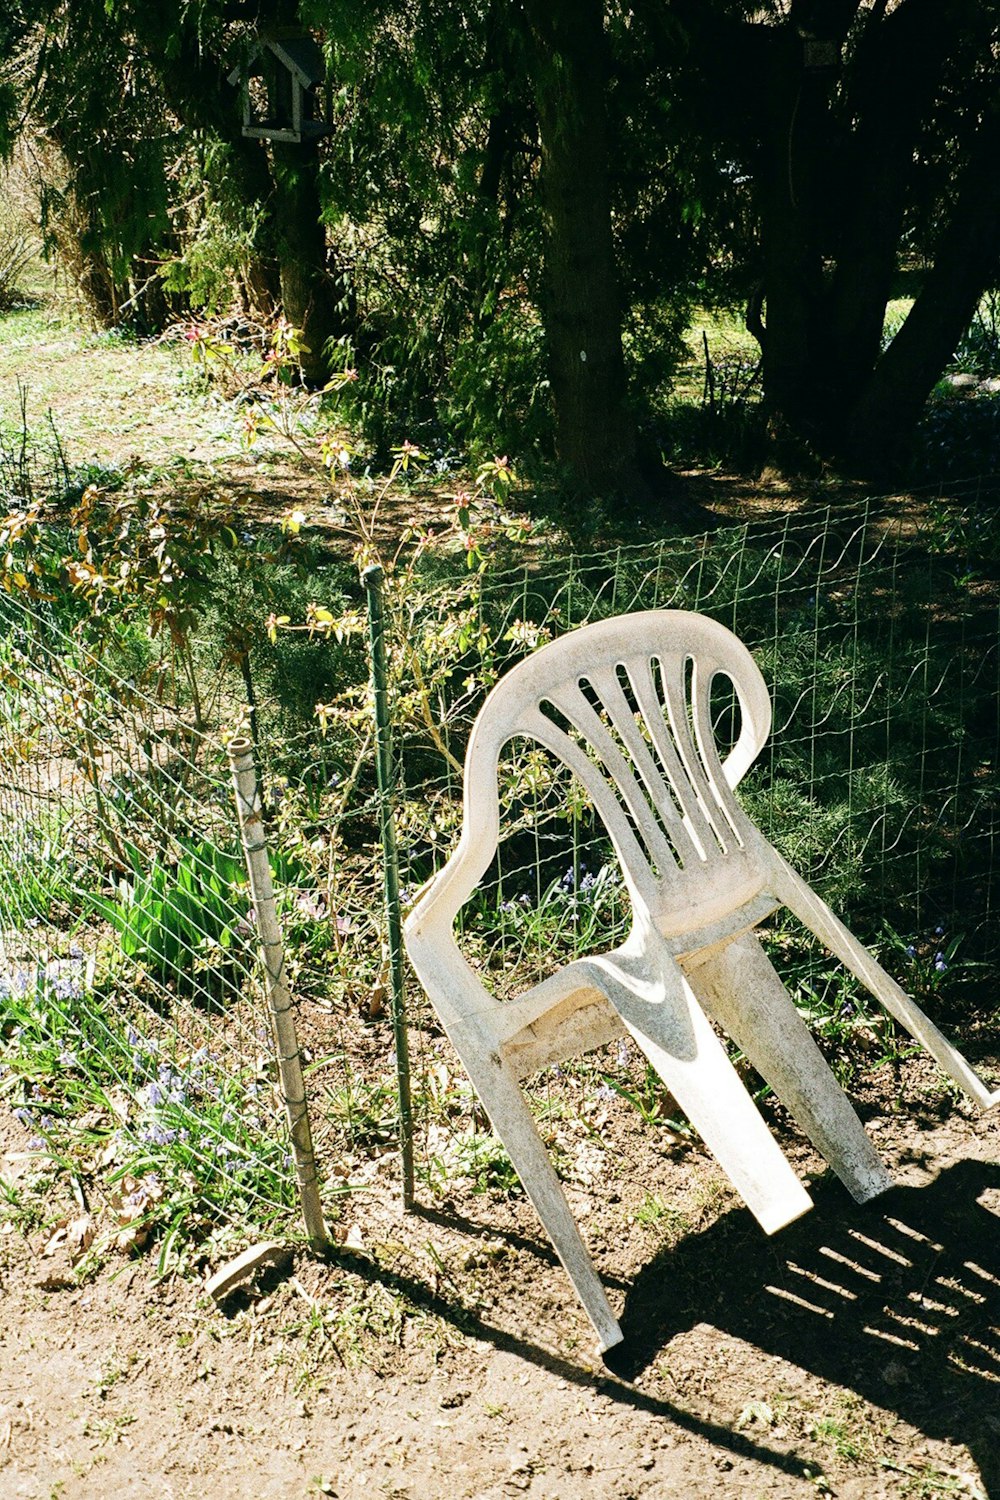 a chair in a yard